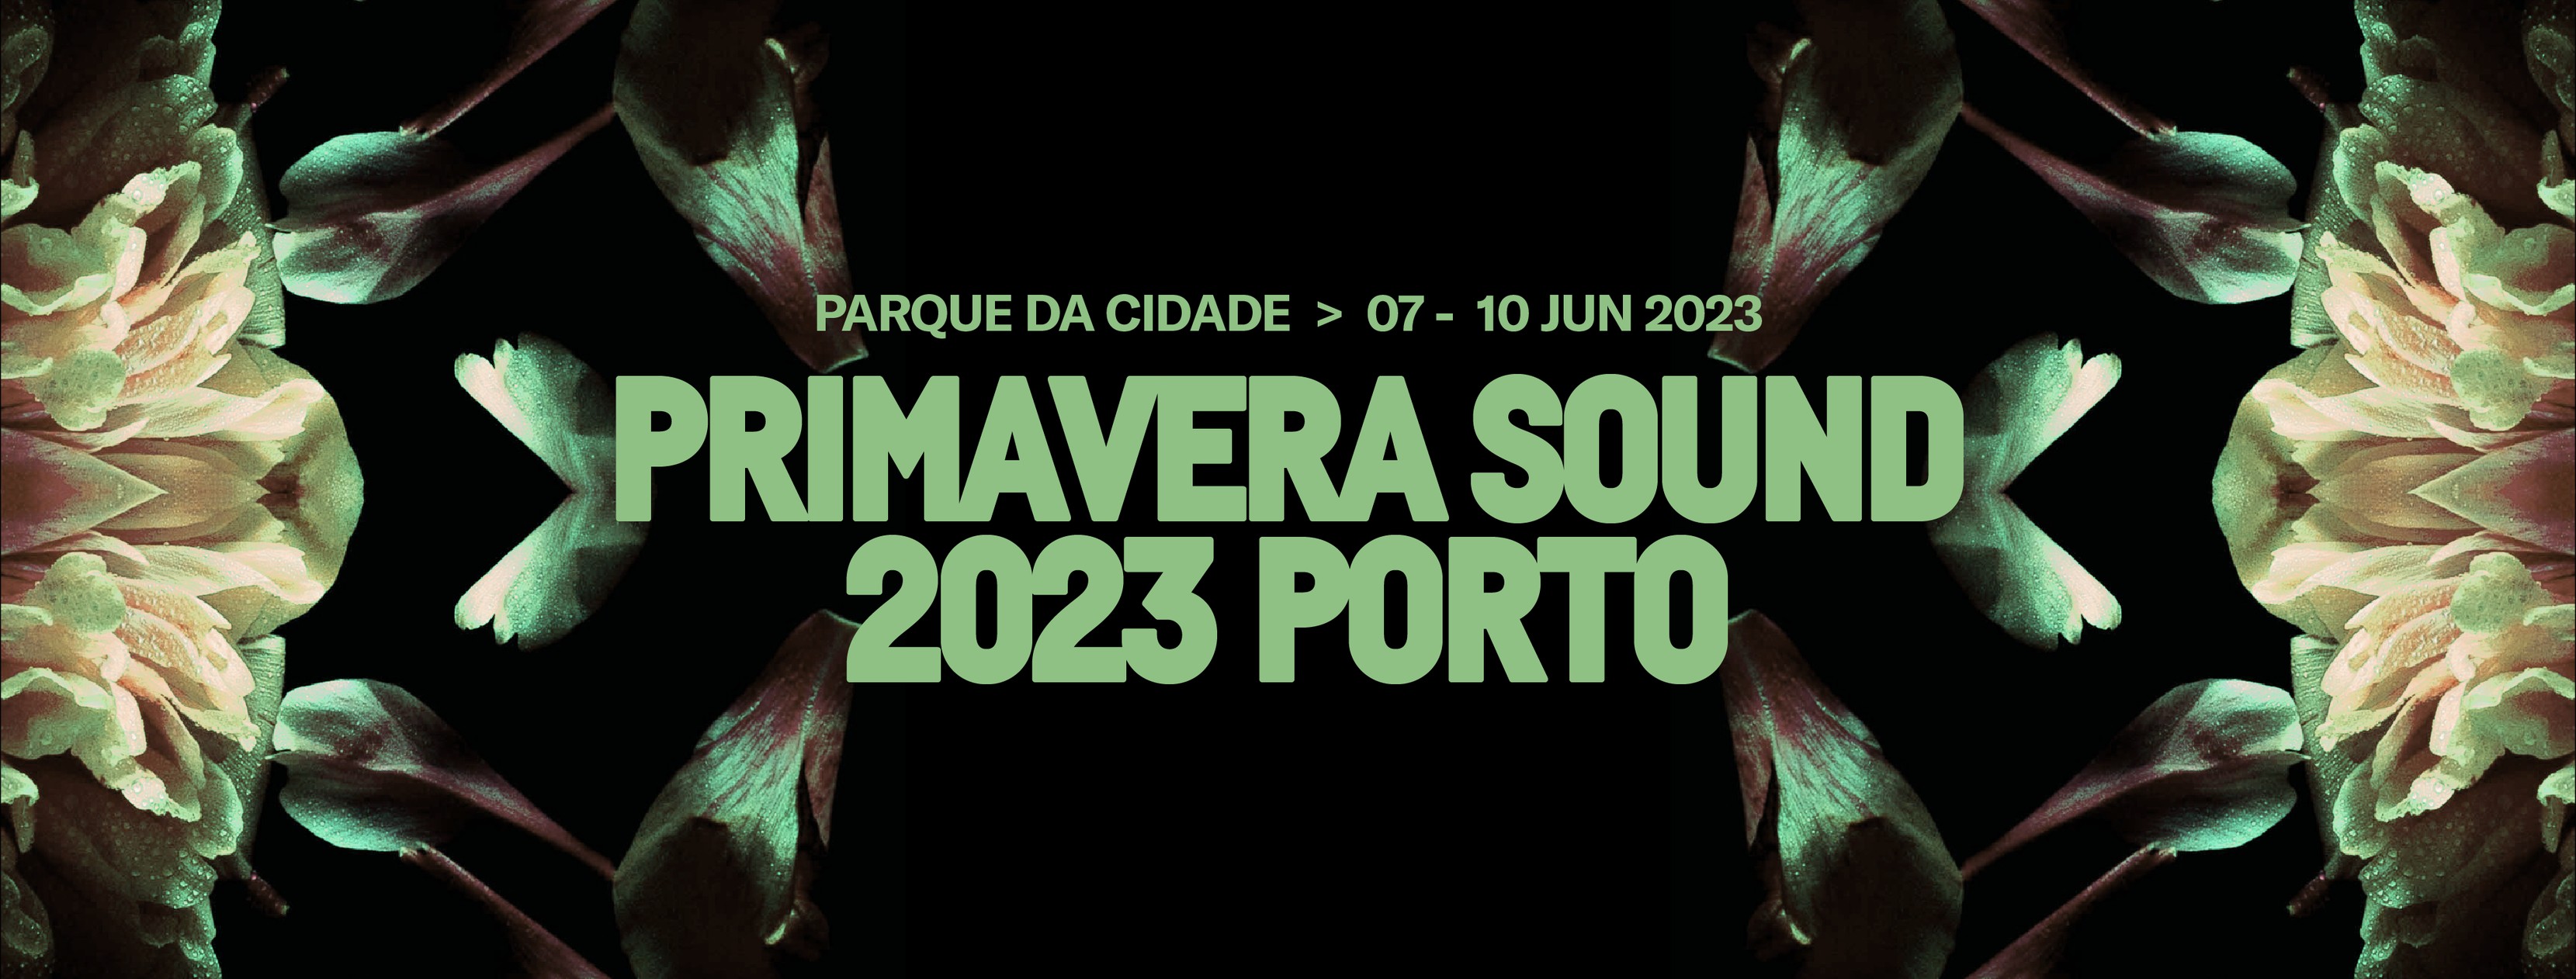 PRIMAVERA SOUND 2023 PORTO - Event